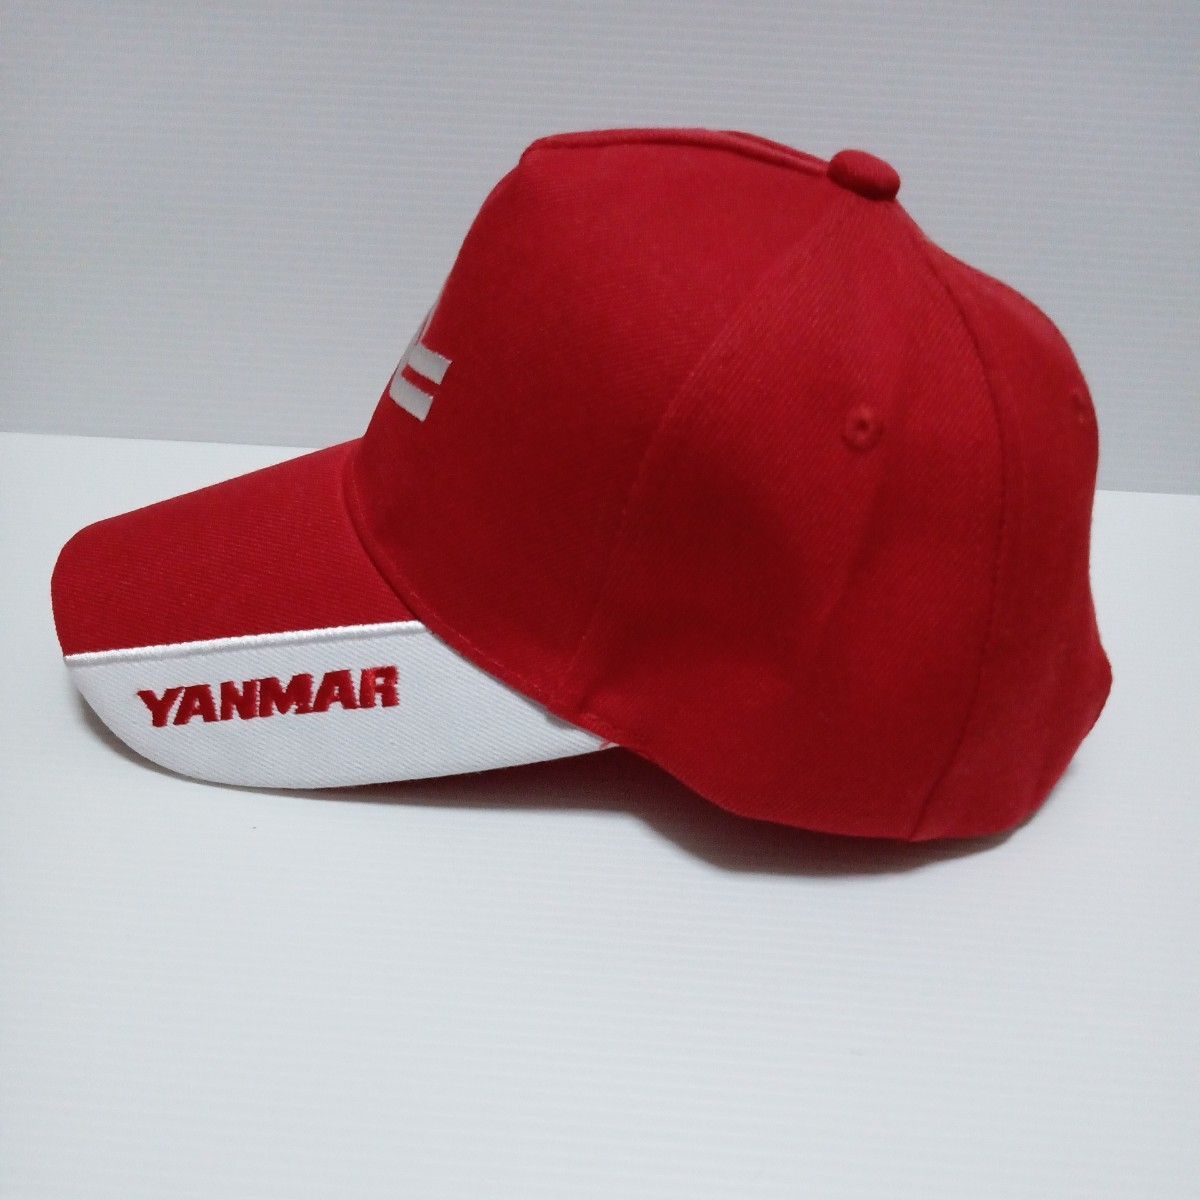 ヤンマー「YANMAR キャップ」刺繍 帽子 赤/白